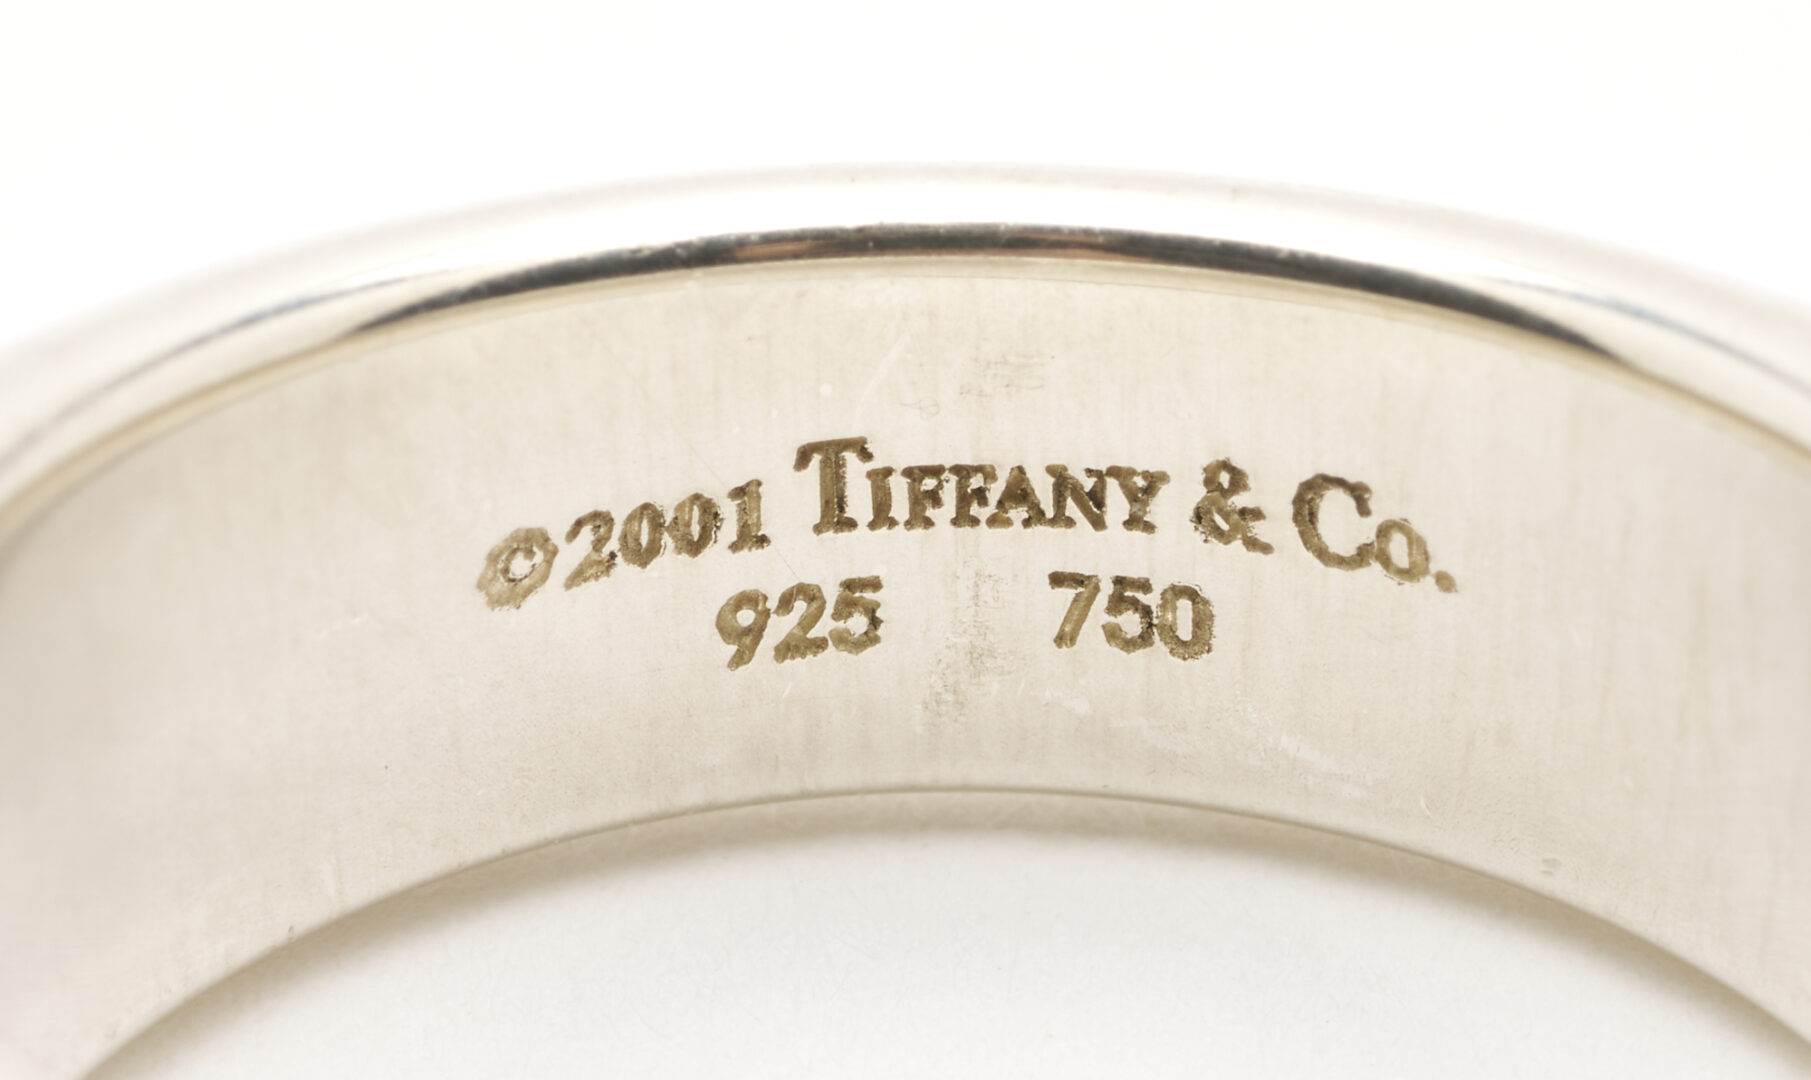 Lot 781: Tiffany & Co. Sterling, 18K, & Gemstone Ring & Earrings